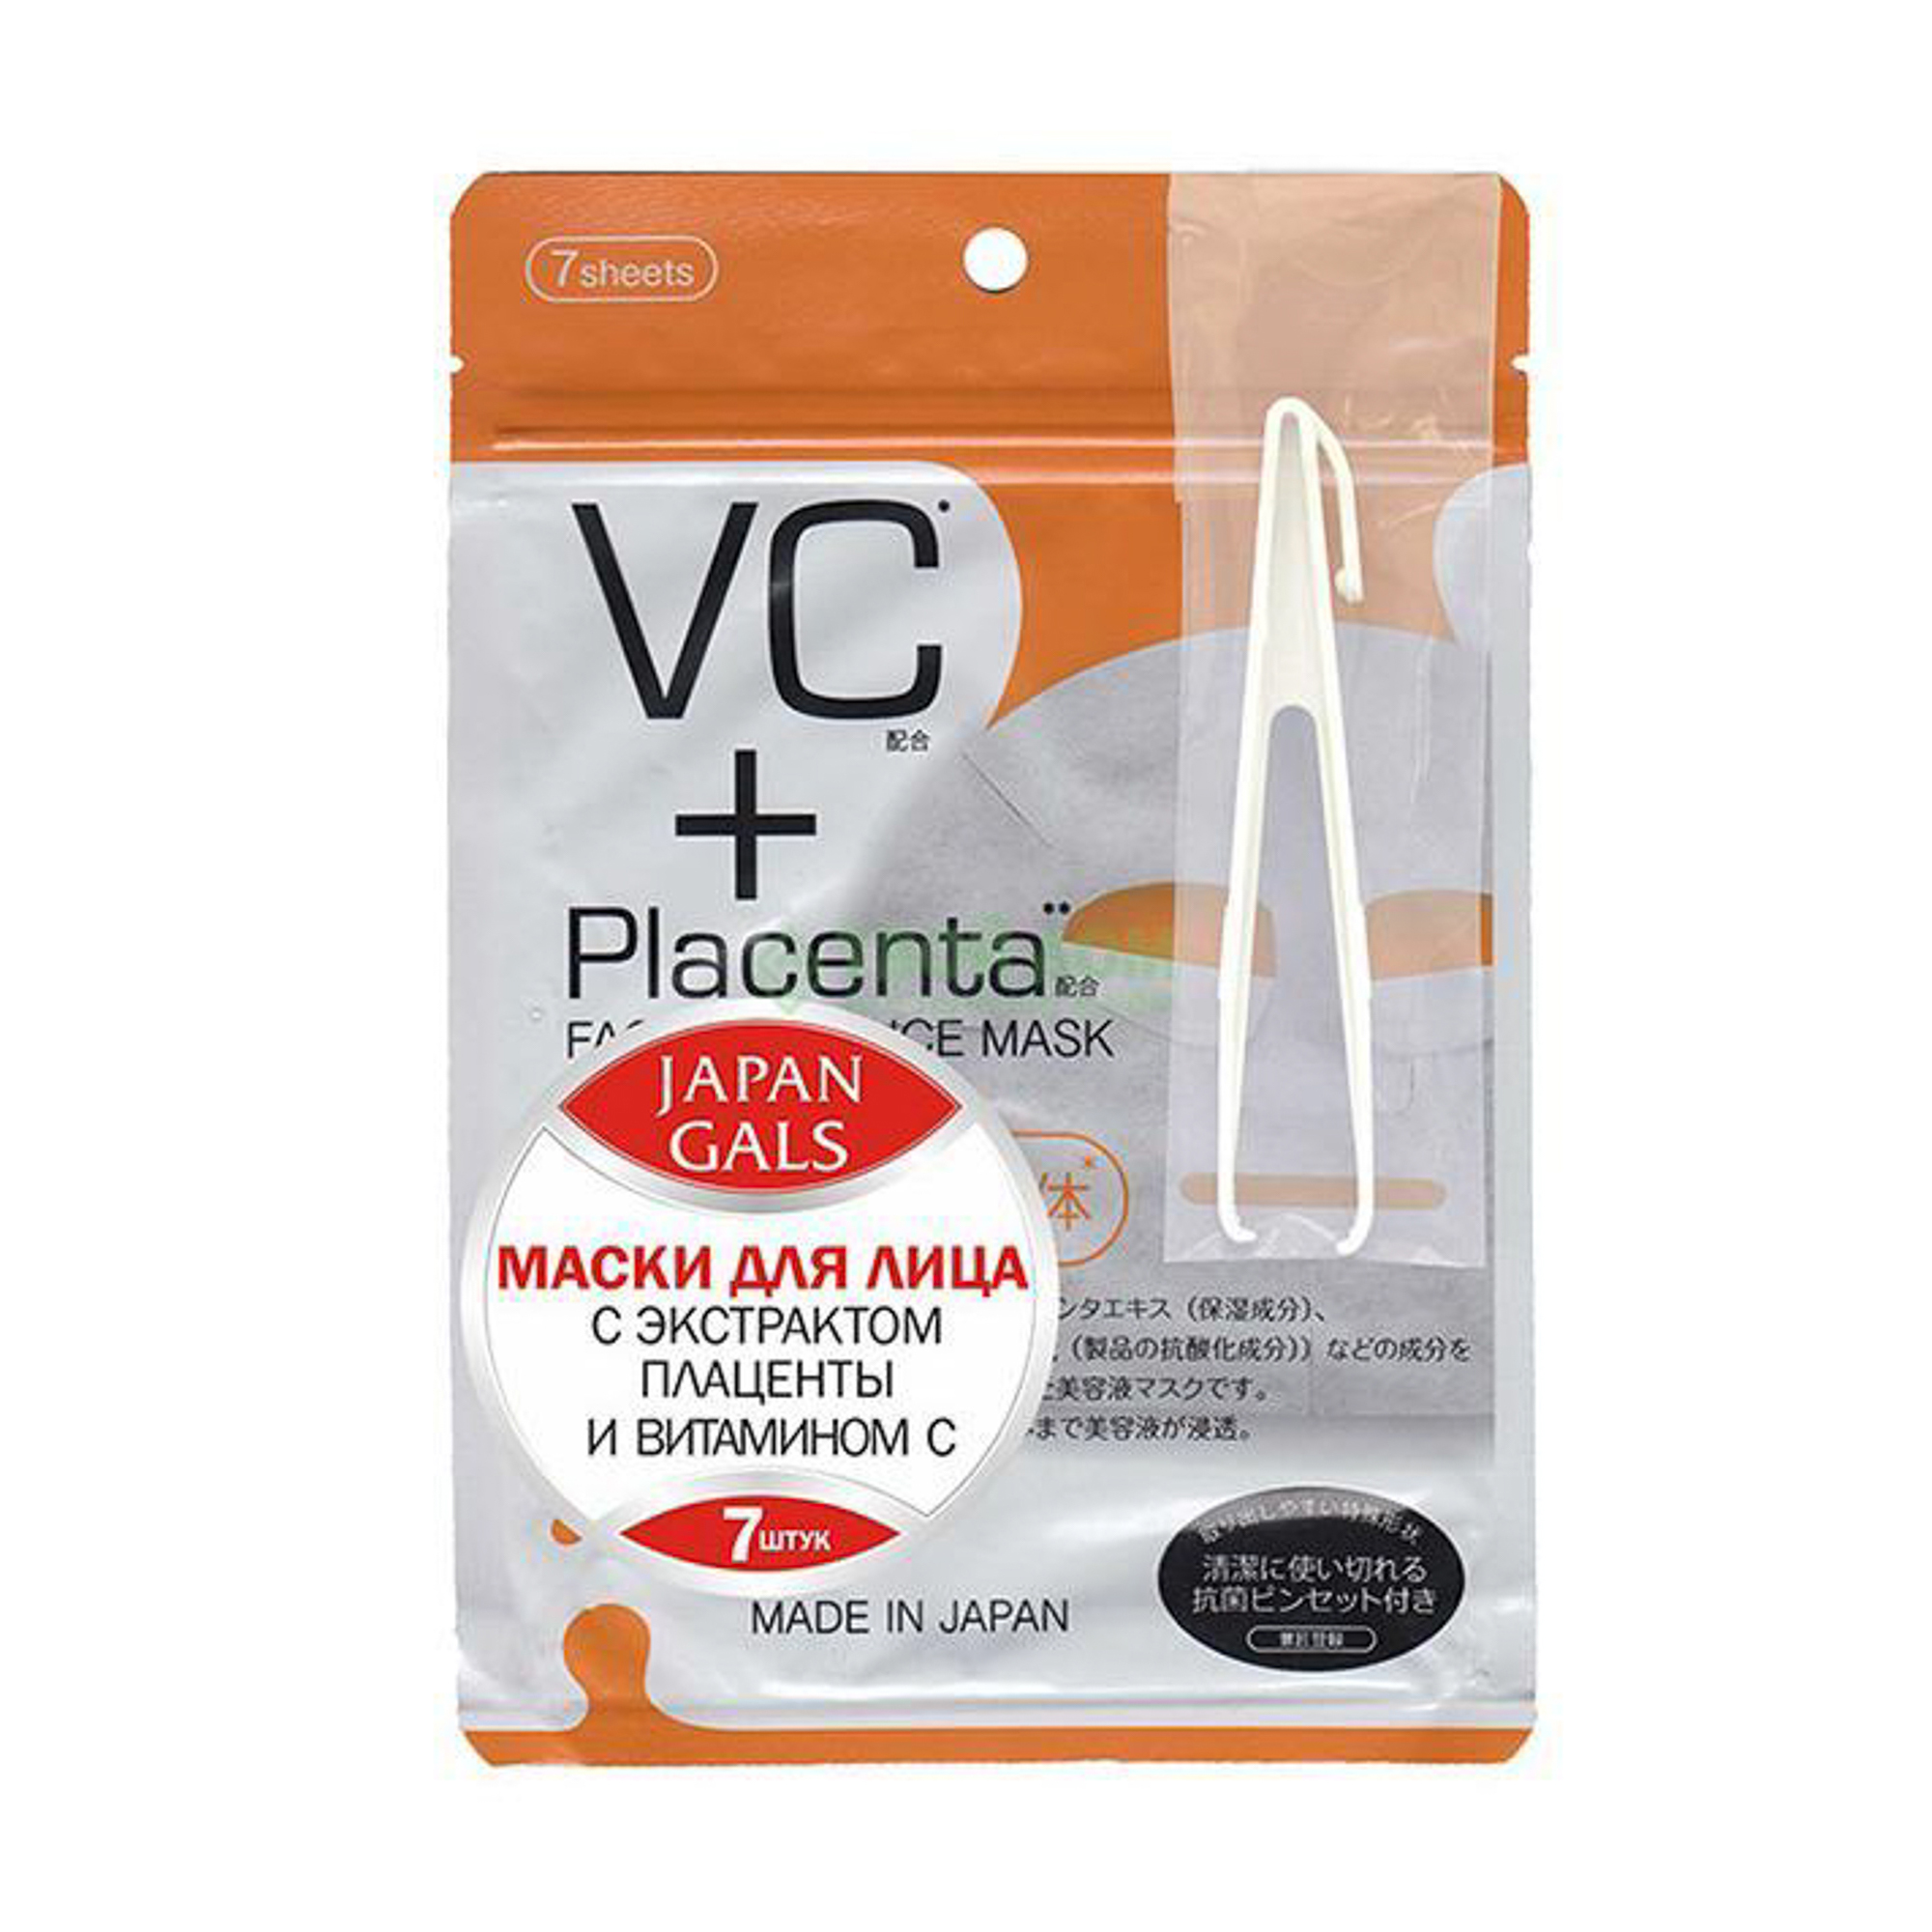 фото Маска japan gals для лица vc и placenta facial essence mask 7 шт